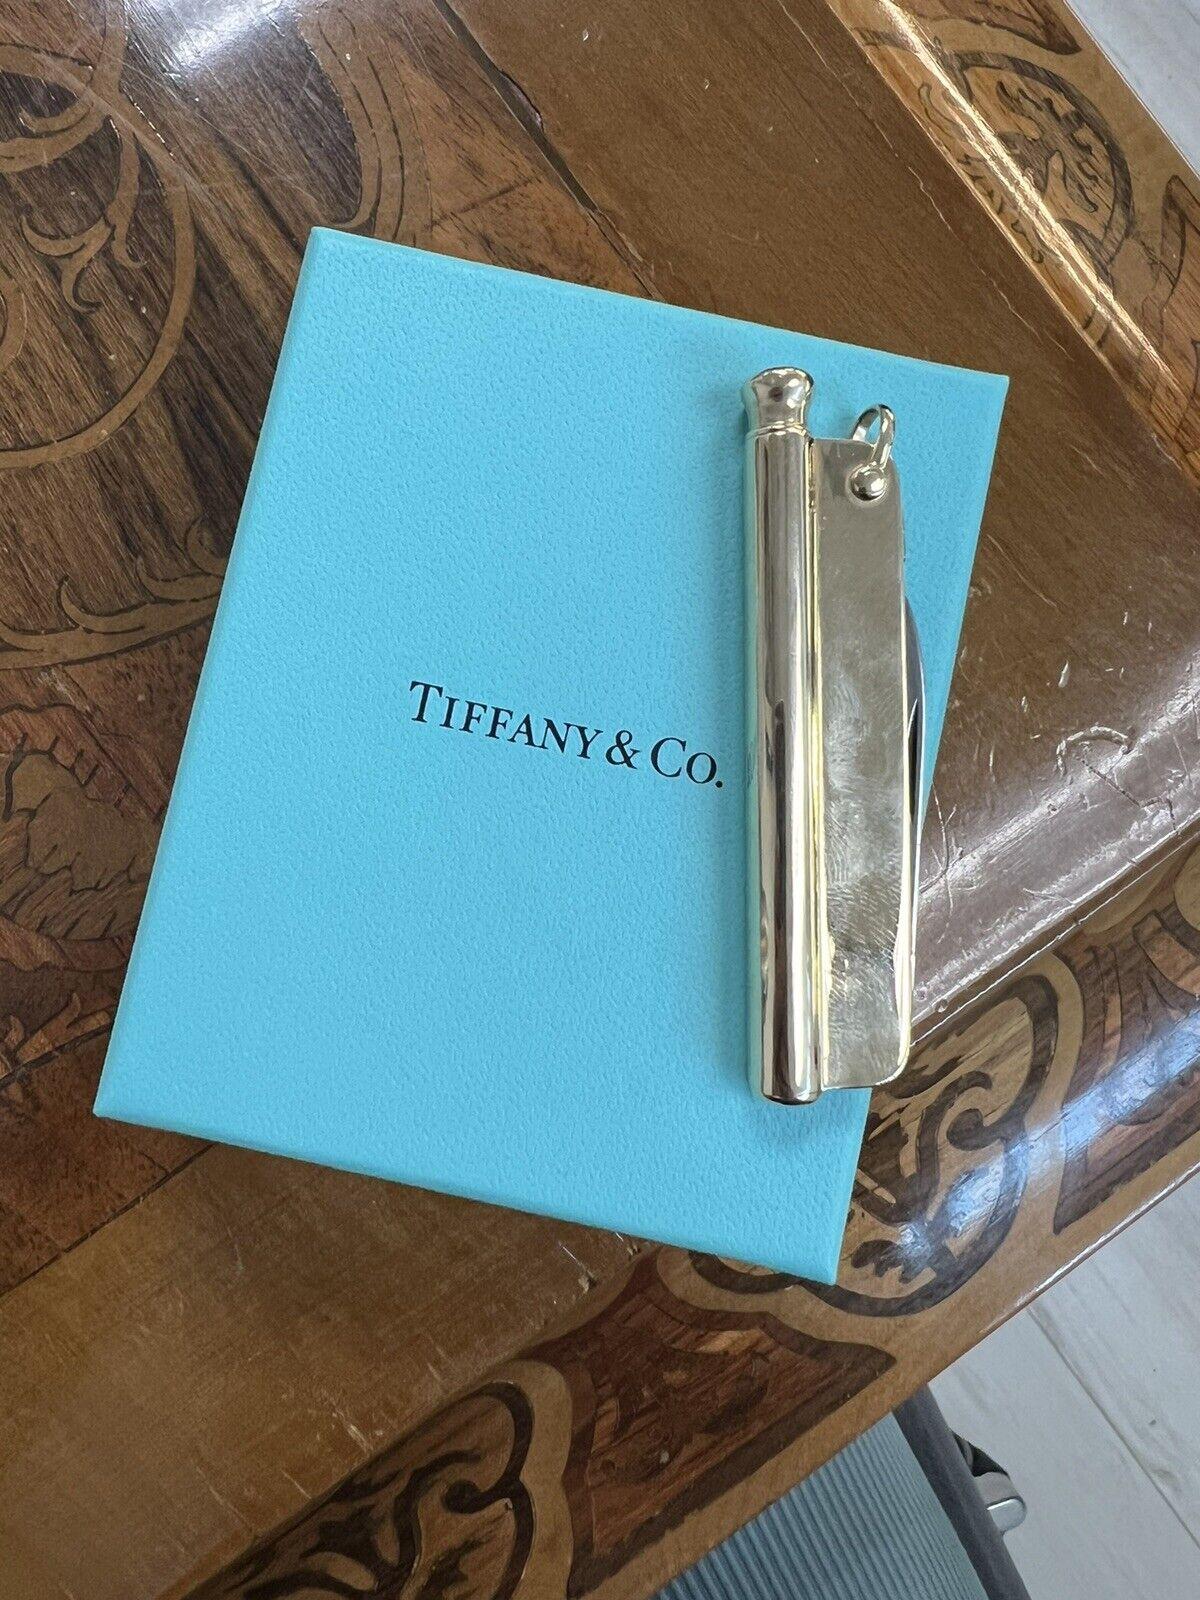 Tiffany & Co. Antike 14k Gelbgold Taschenmesser / Bleistift Anhänger CIRCA 1900s w/Box & Pouch

Hier haben Sie die Chance, einen wunderschönen Designer-Anhänger mit hohem Sammlerwert zu erwerben.  Wirklich ein tolles Stück zu einem tollen Preis!